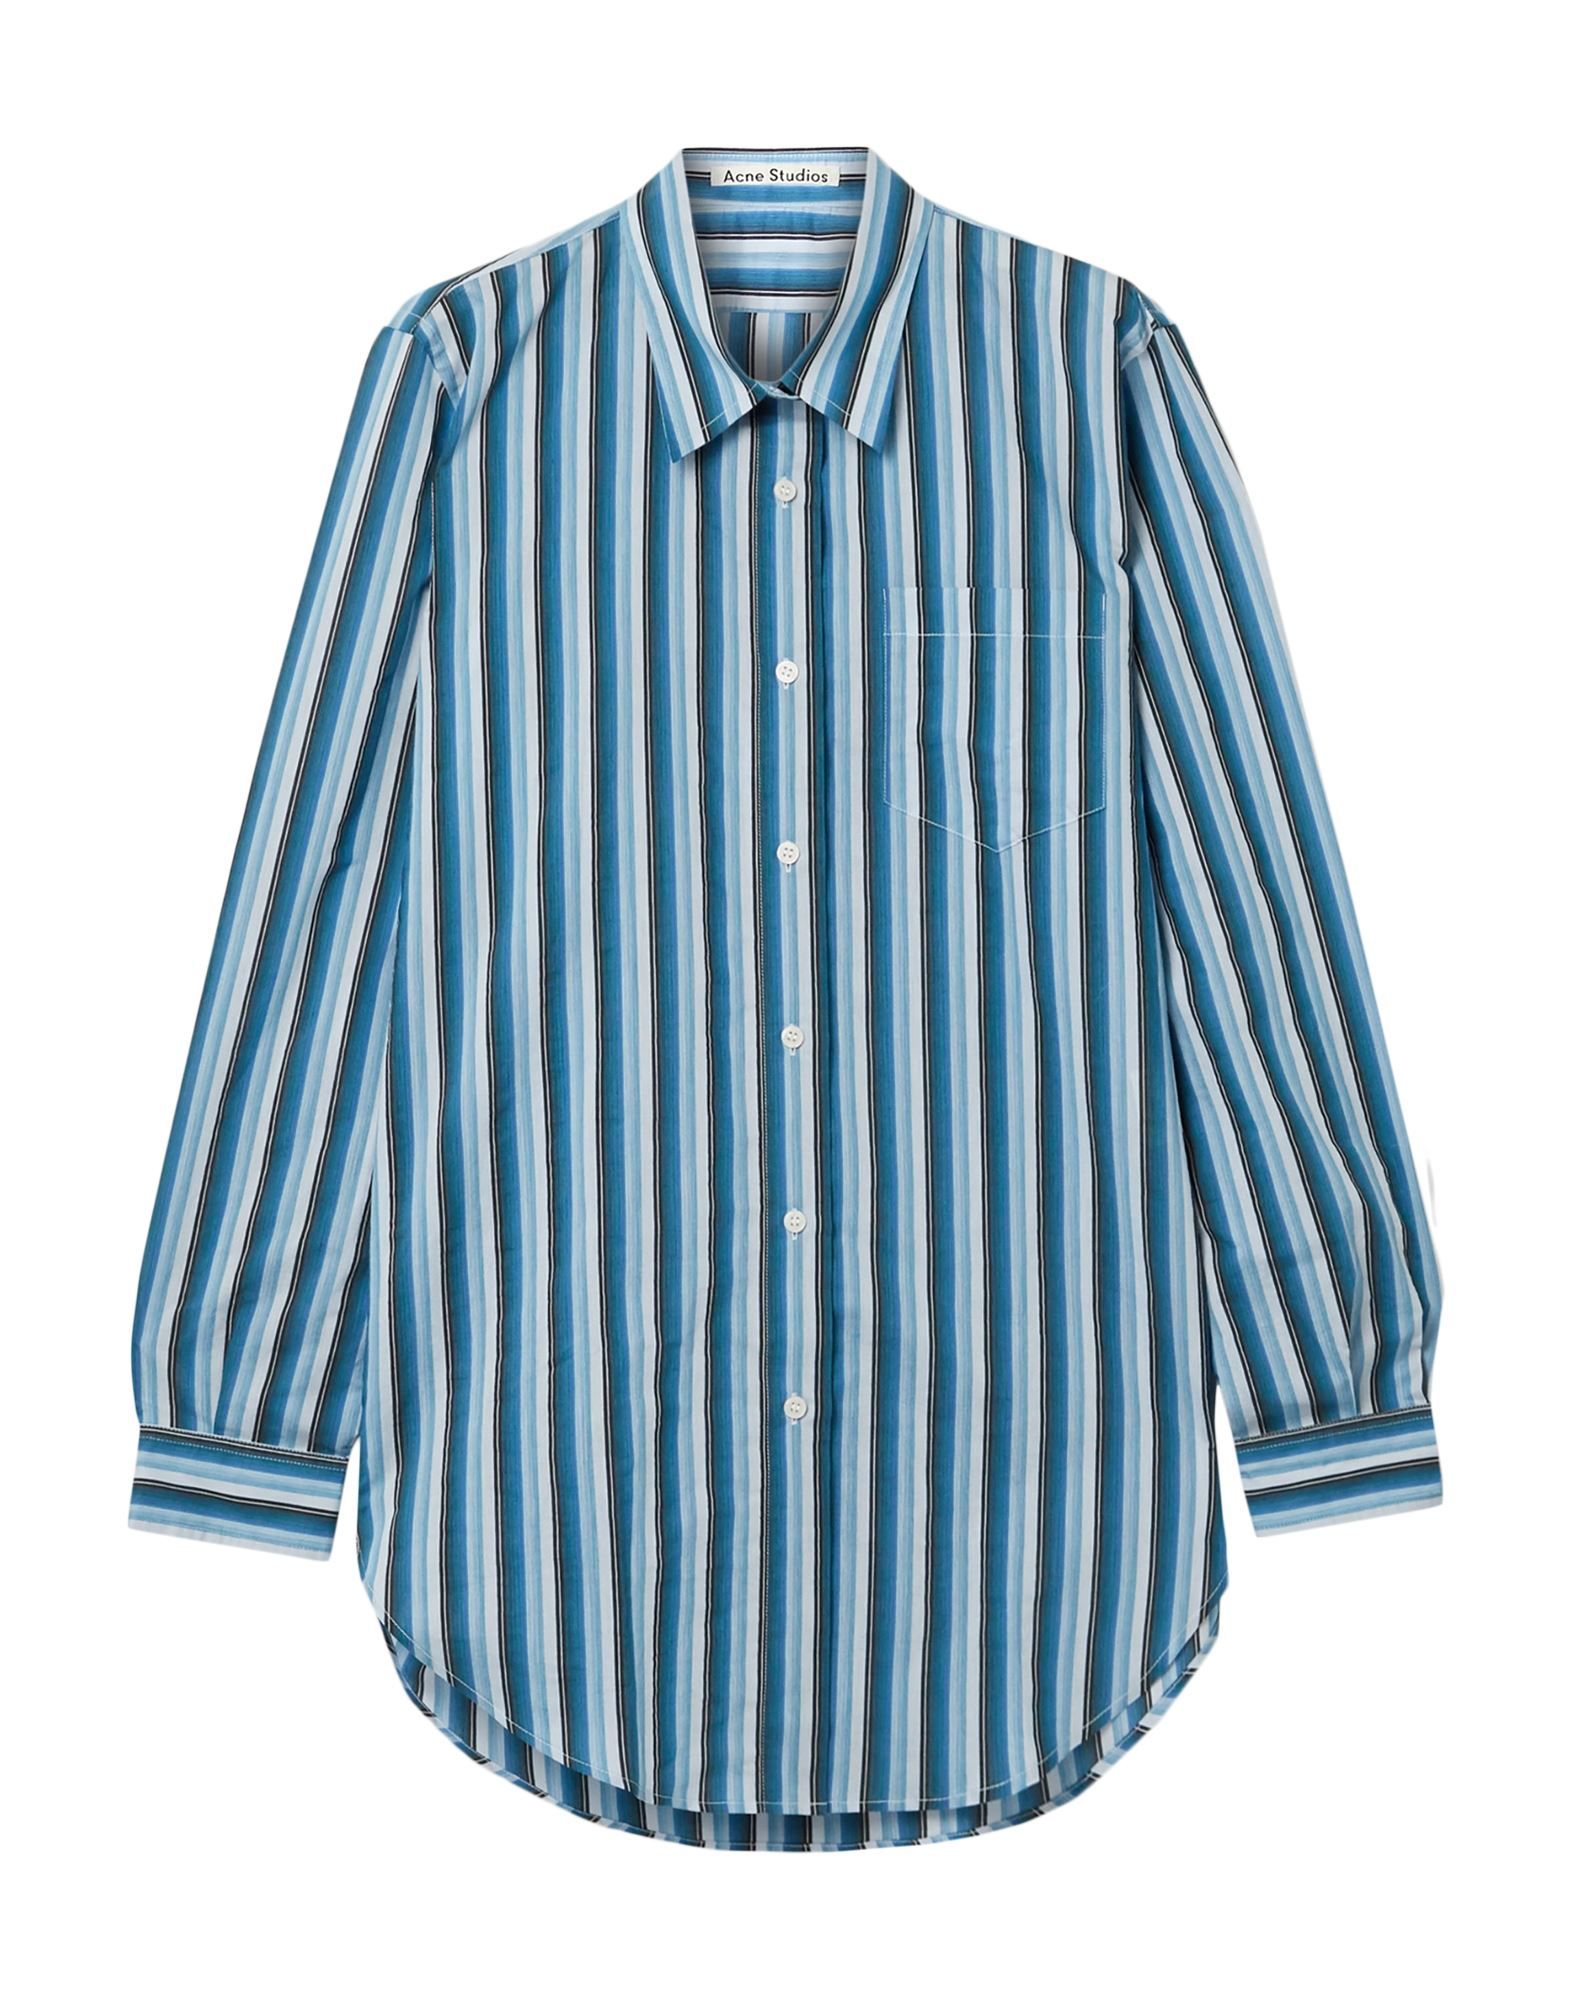 plain weave, no appliqués, stripes, front closure, button closing, long sleeves, single chest pocket, classic neckline, large sized